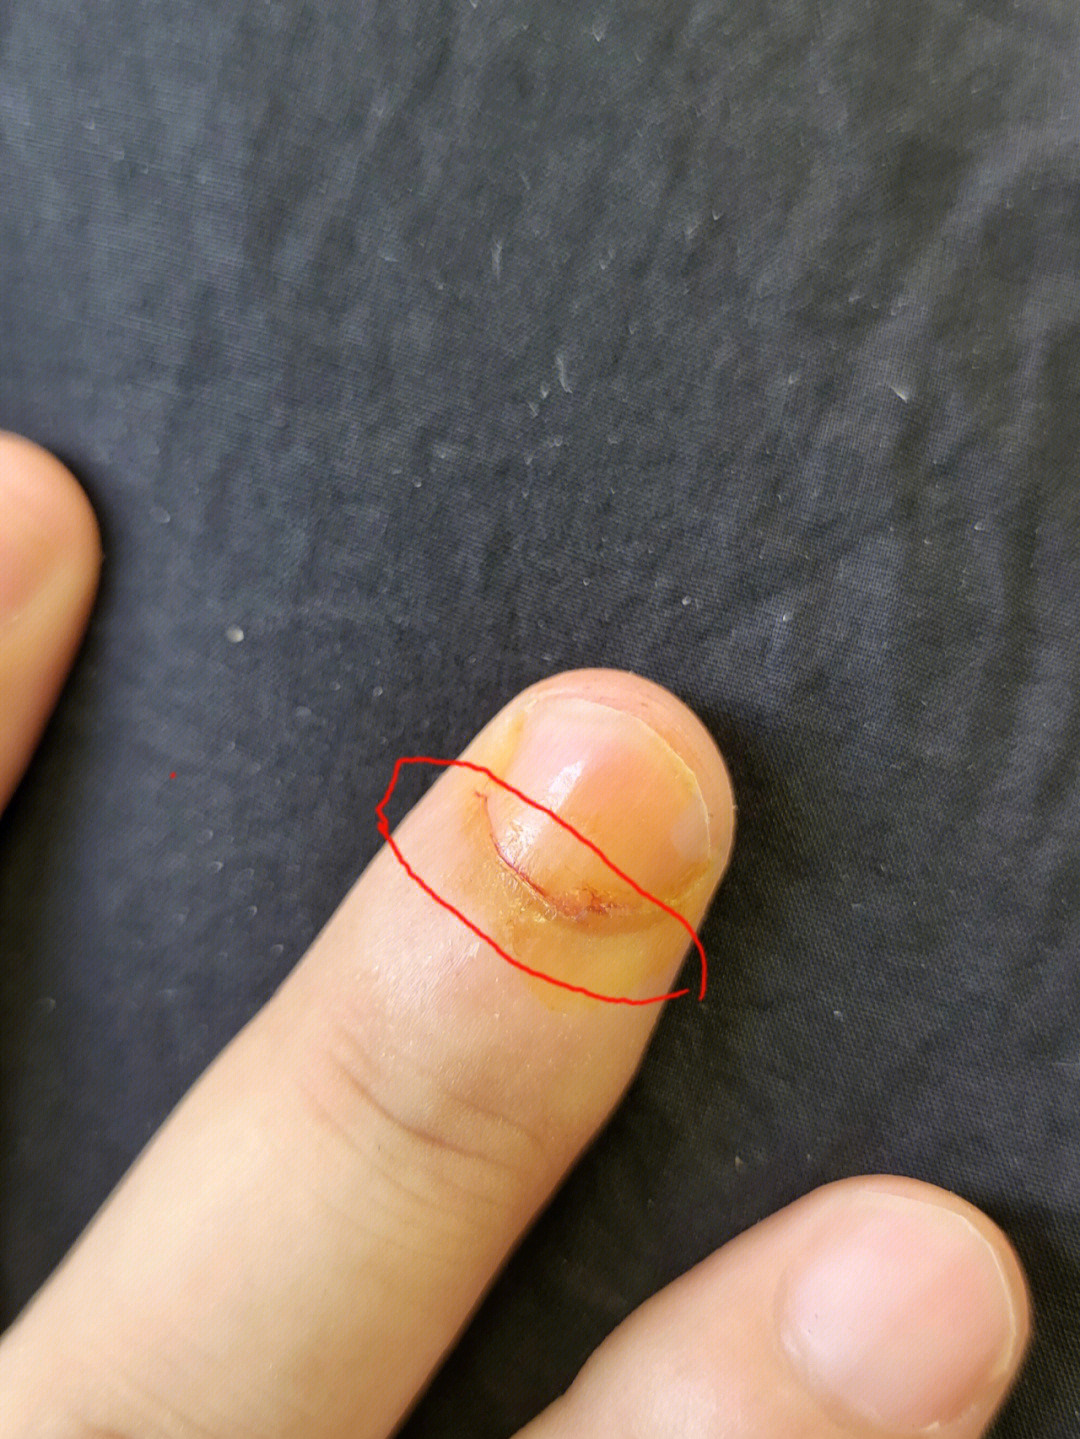 指甲根部被刀切开了会不会影响指甲生长